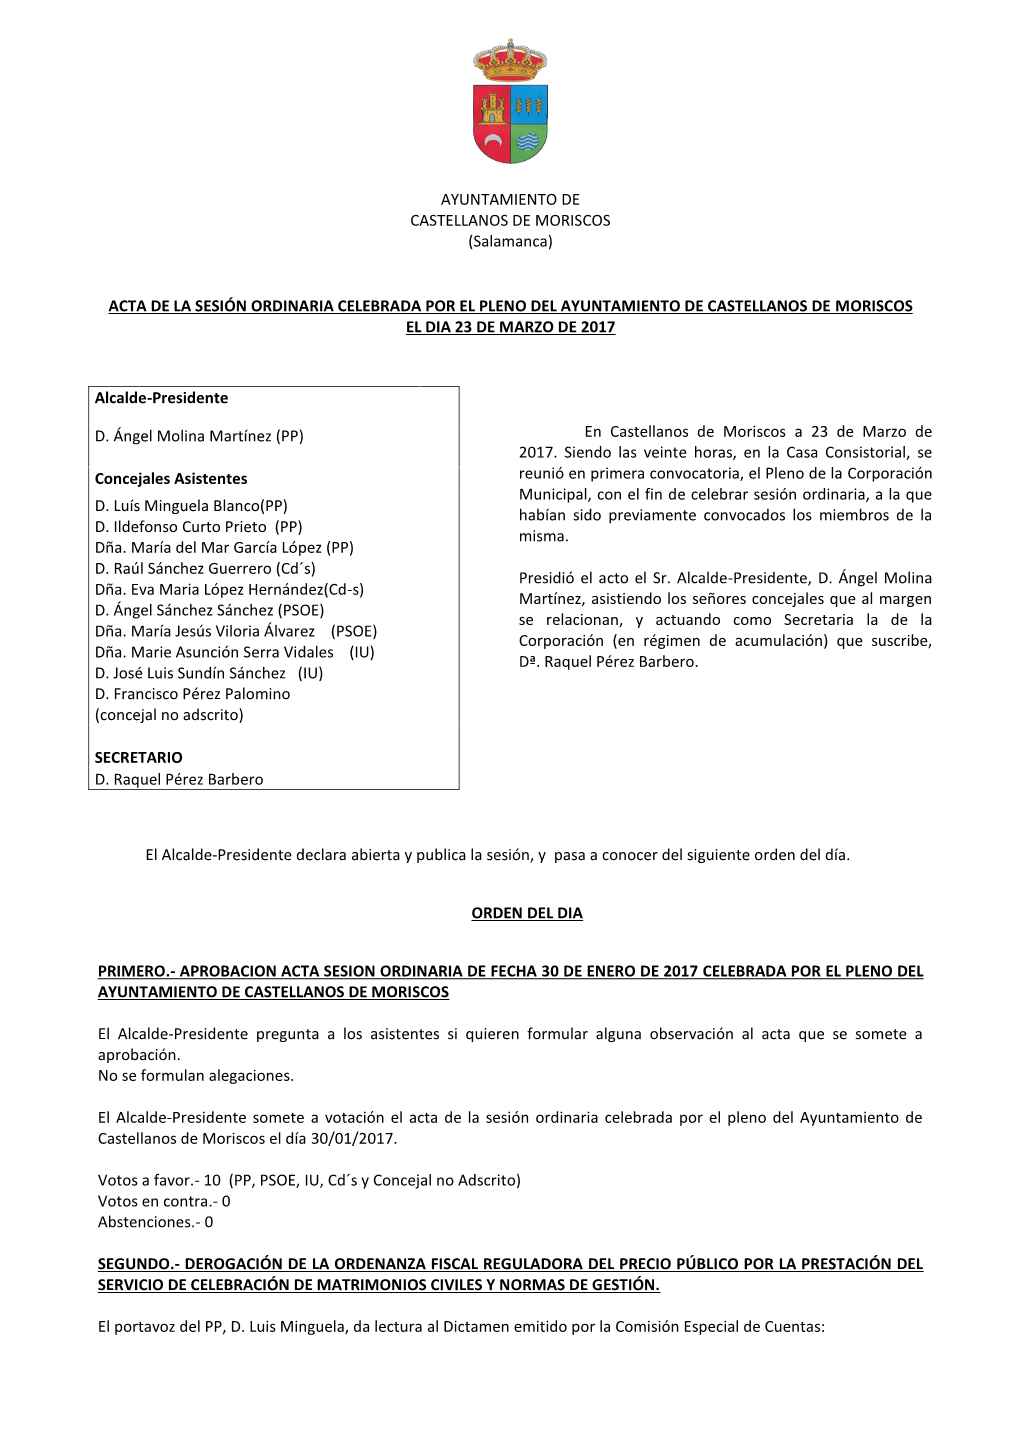 AYUNTAMIENTO DE CASTELLANOS DE MORISCOS (Salamanca) ACTA